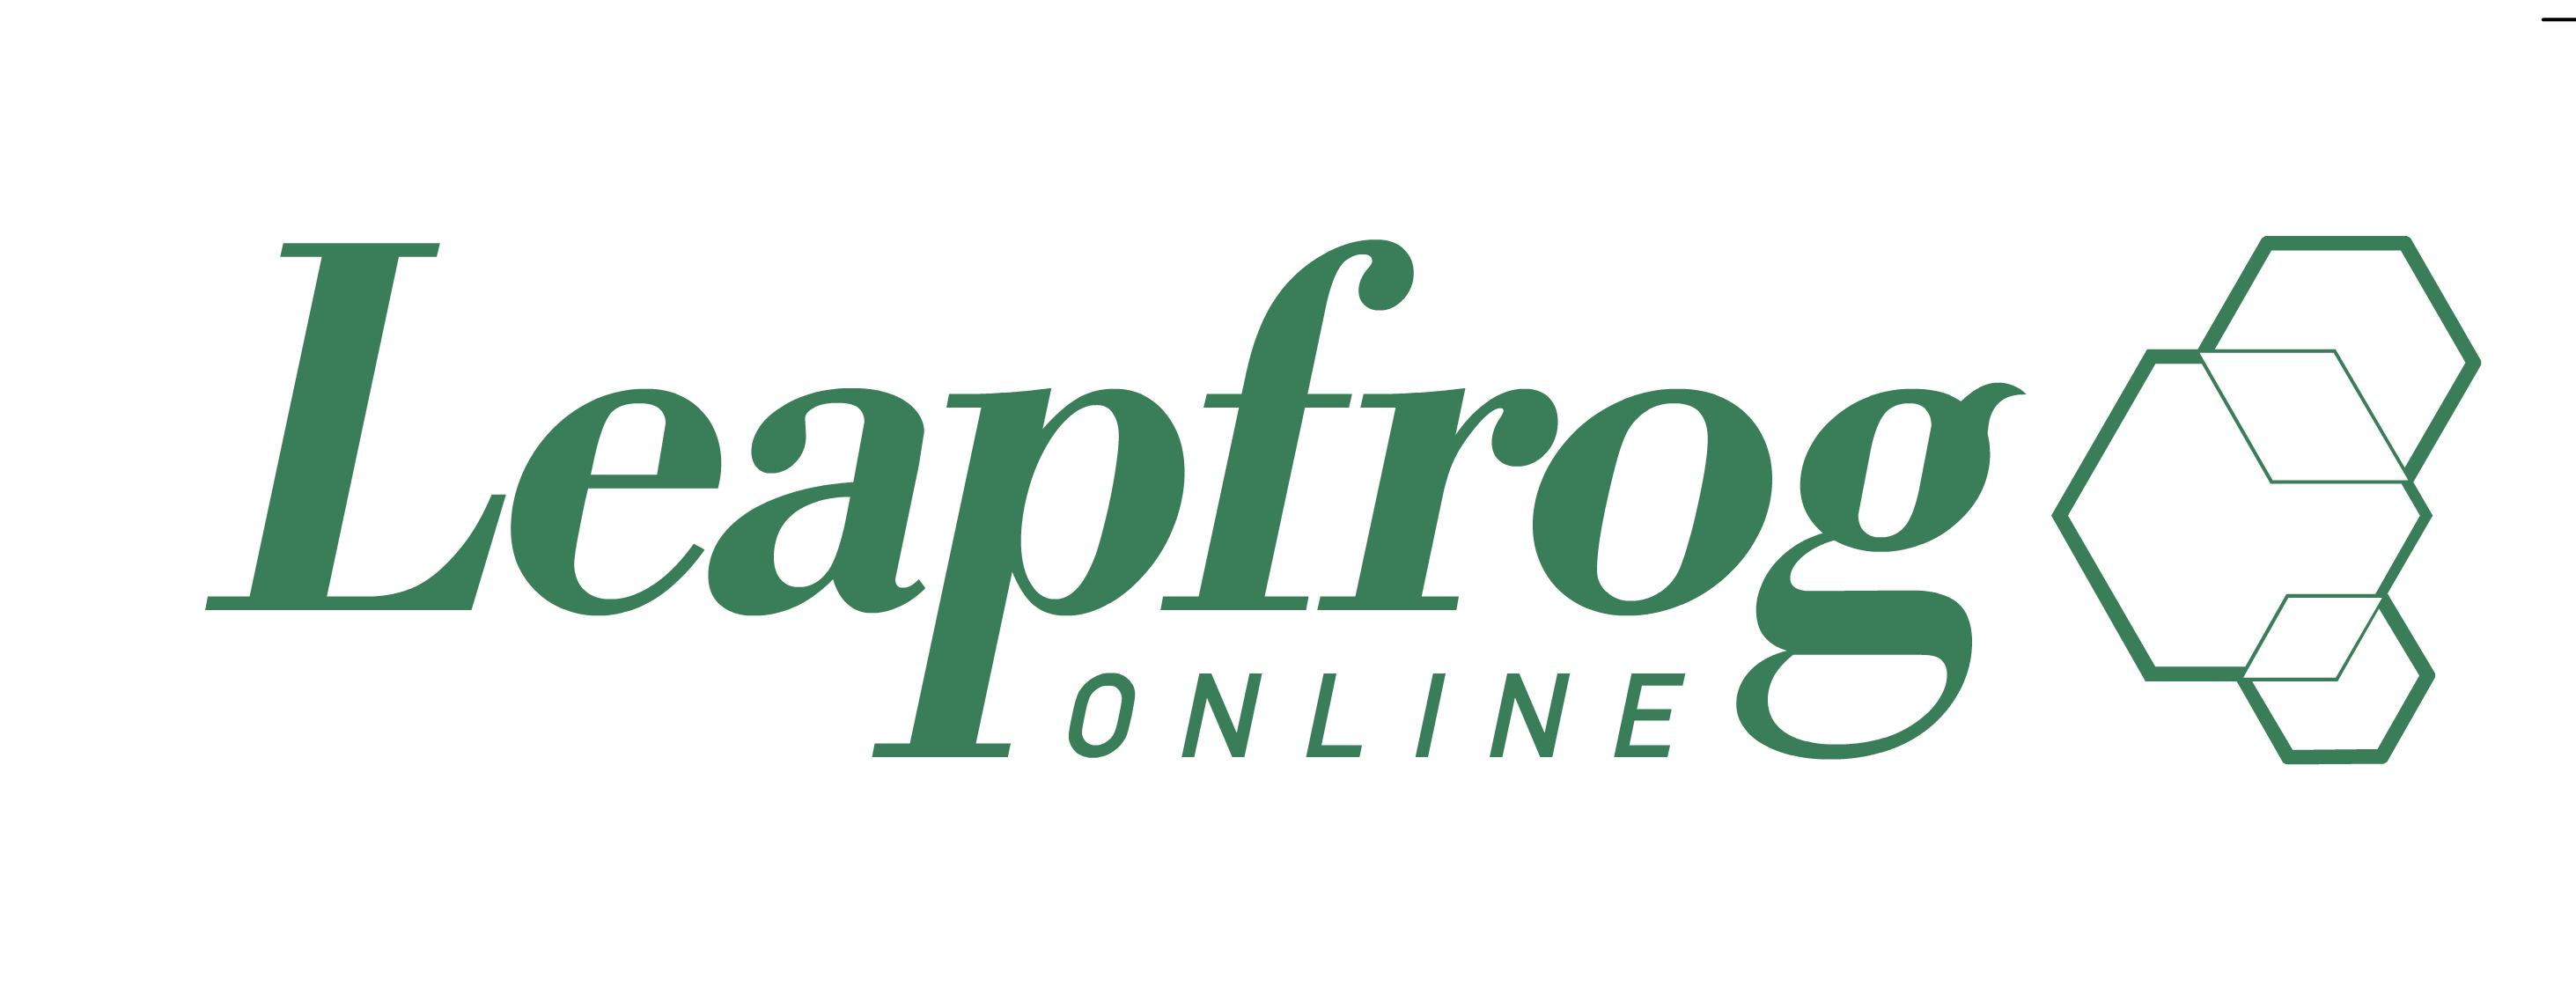 Leapfrog Online logo